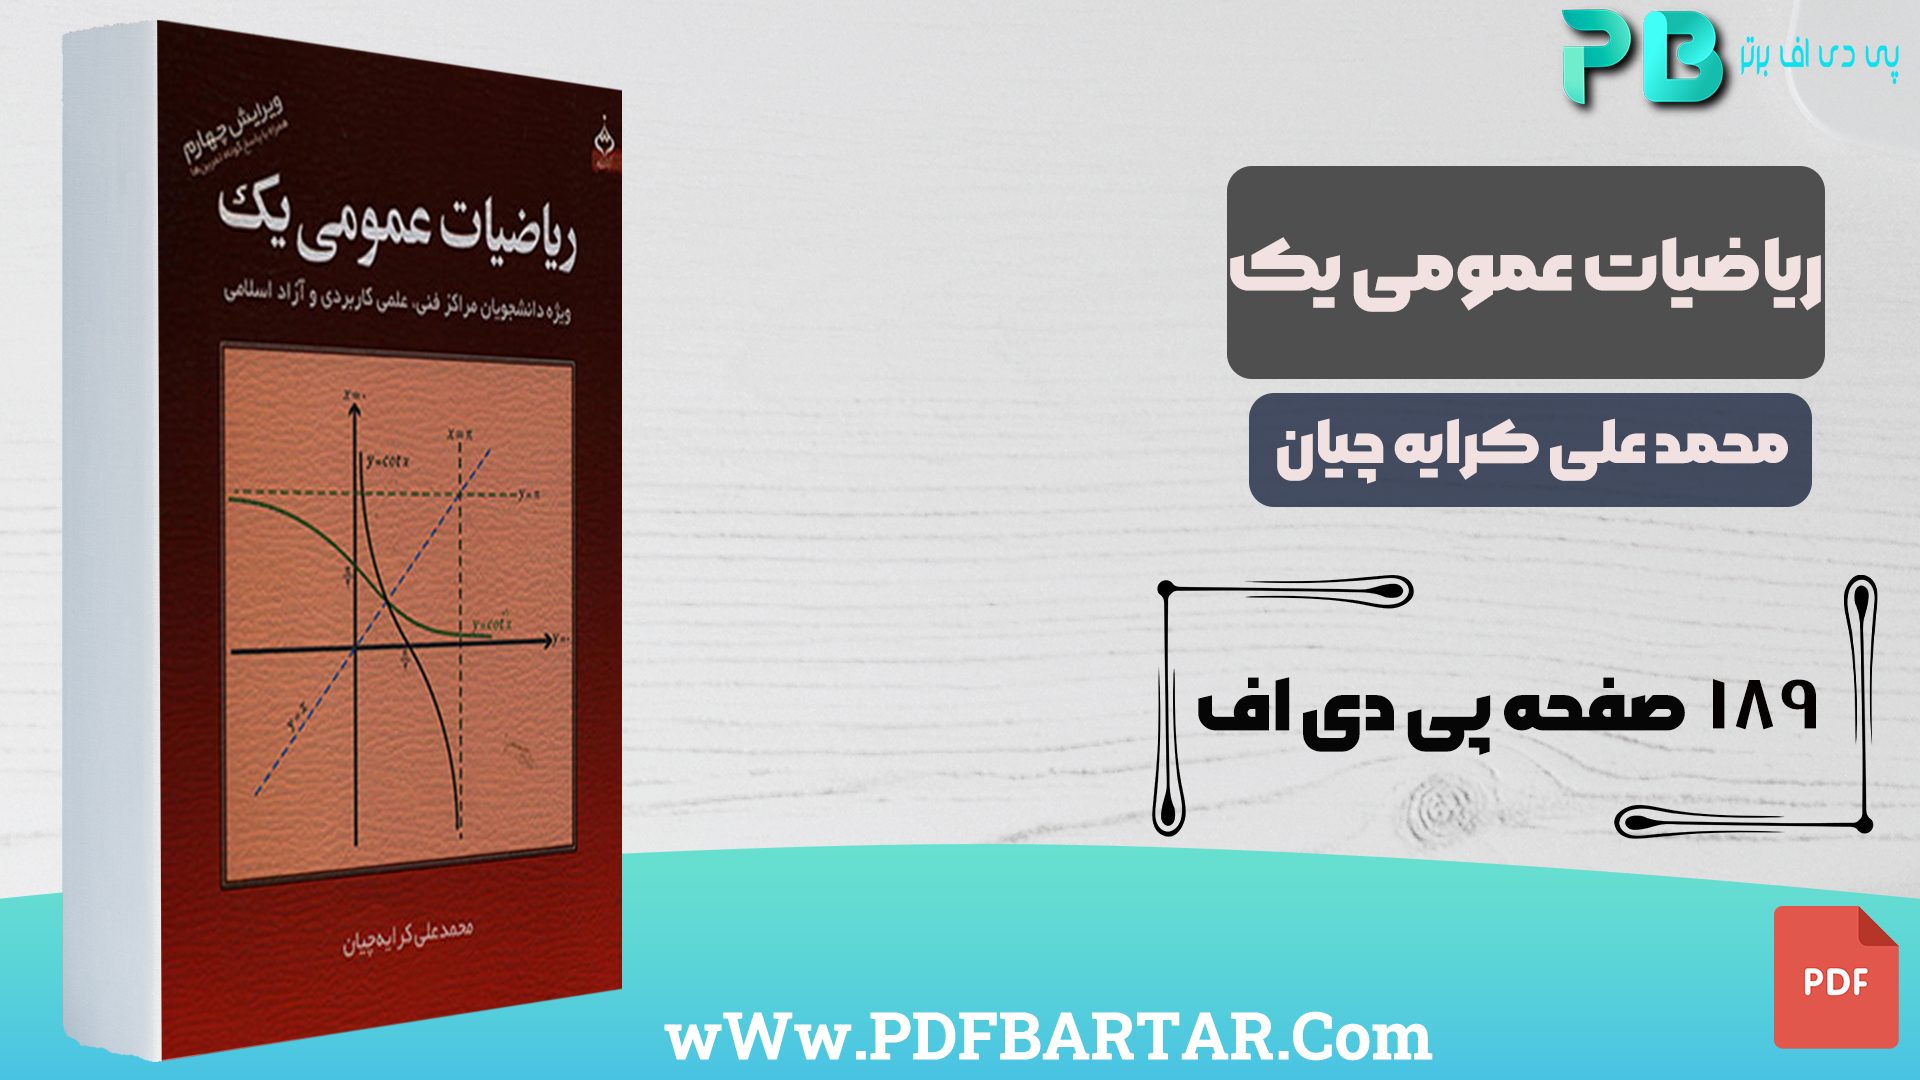 دانلود پی دی اف کتاب ریاضیات عمومی 1 محمد علی کرایه چیان PDF